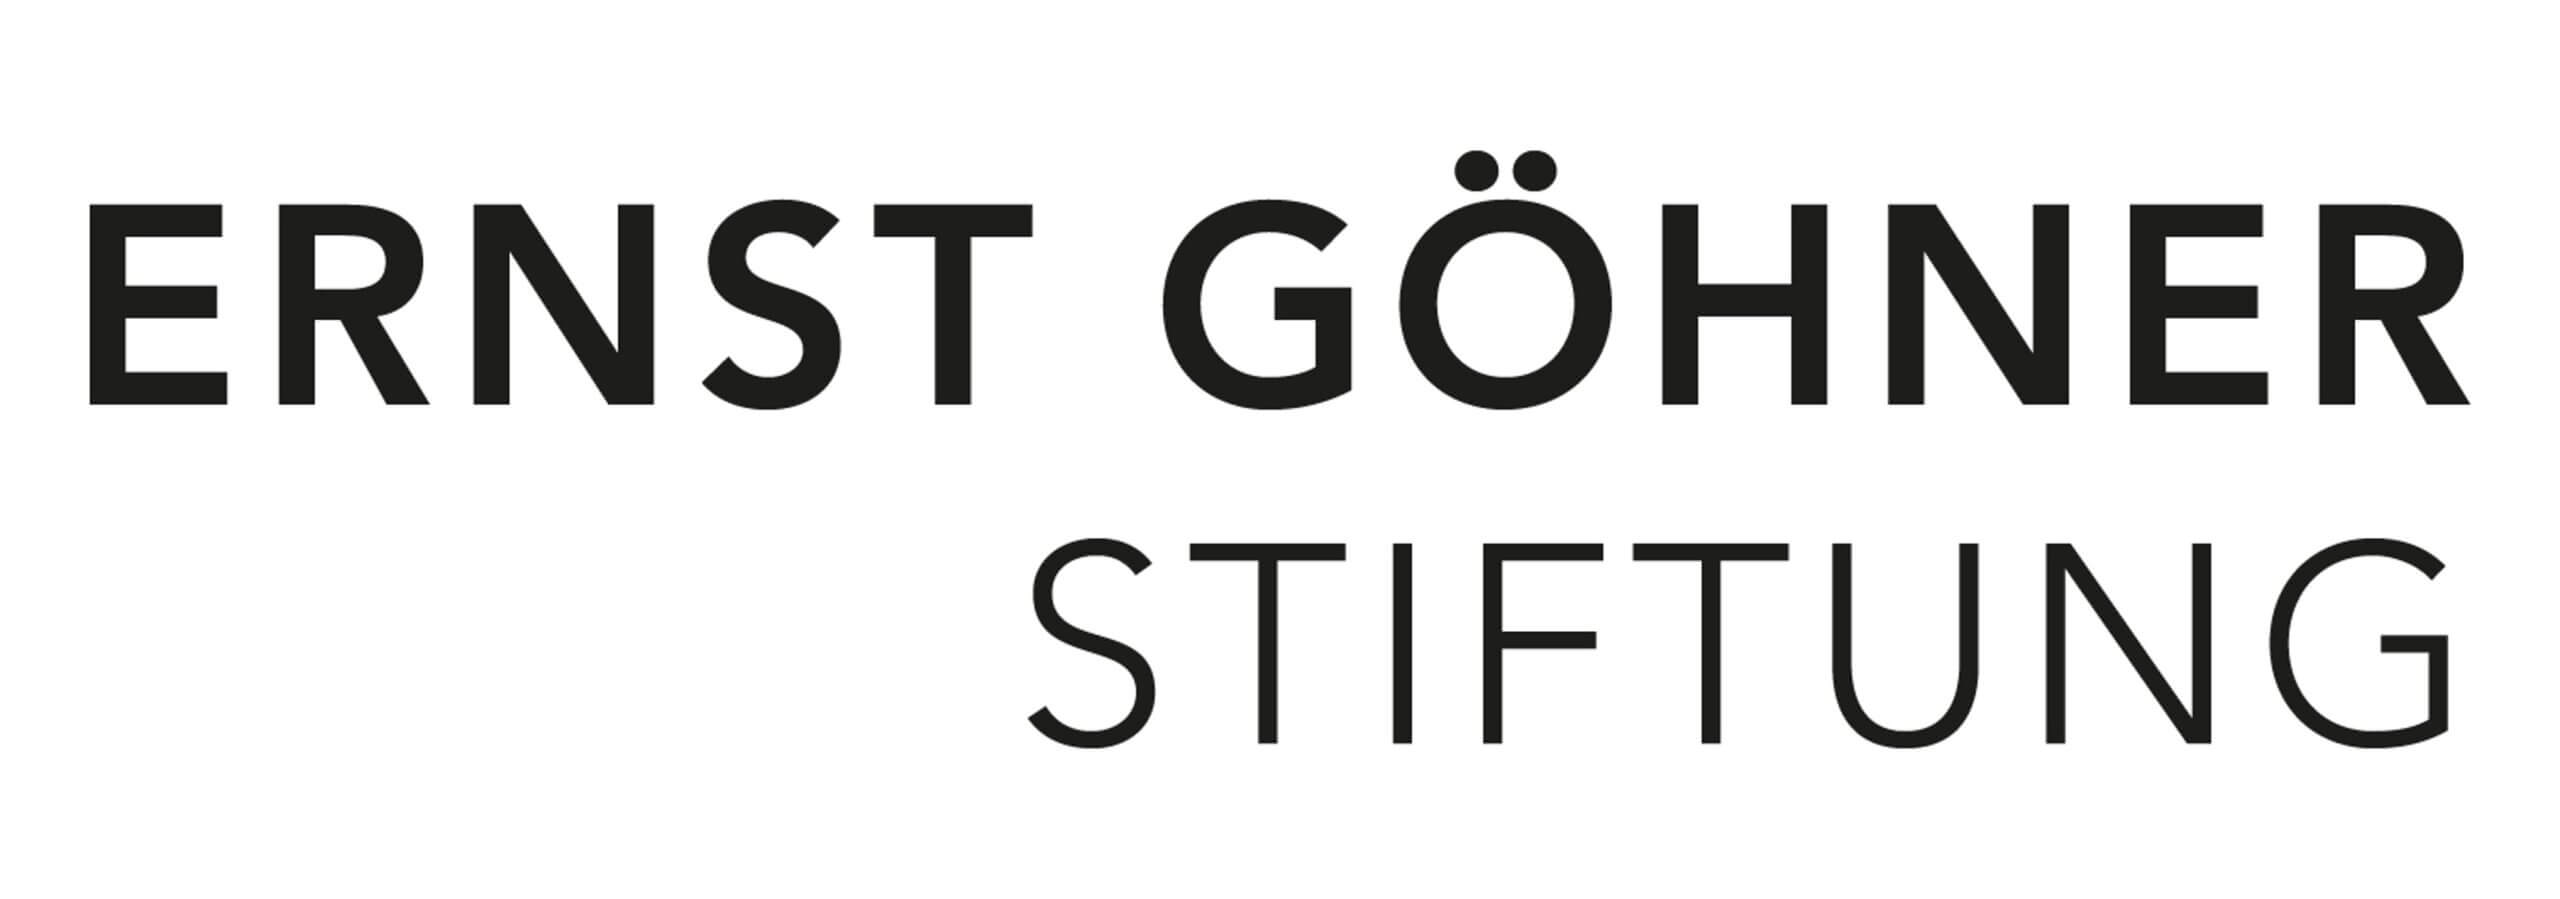 Ernst Göhner Stiftung